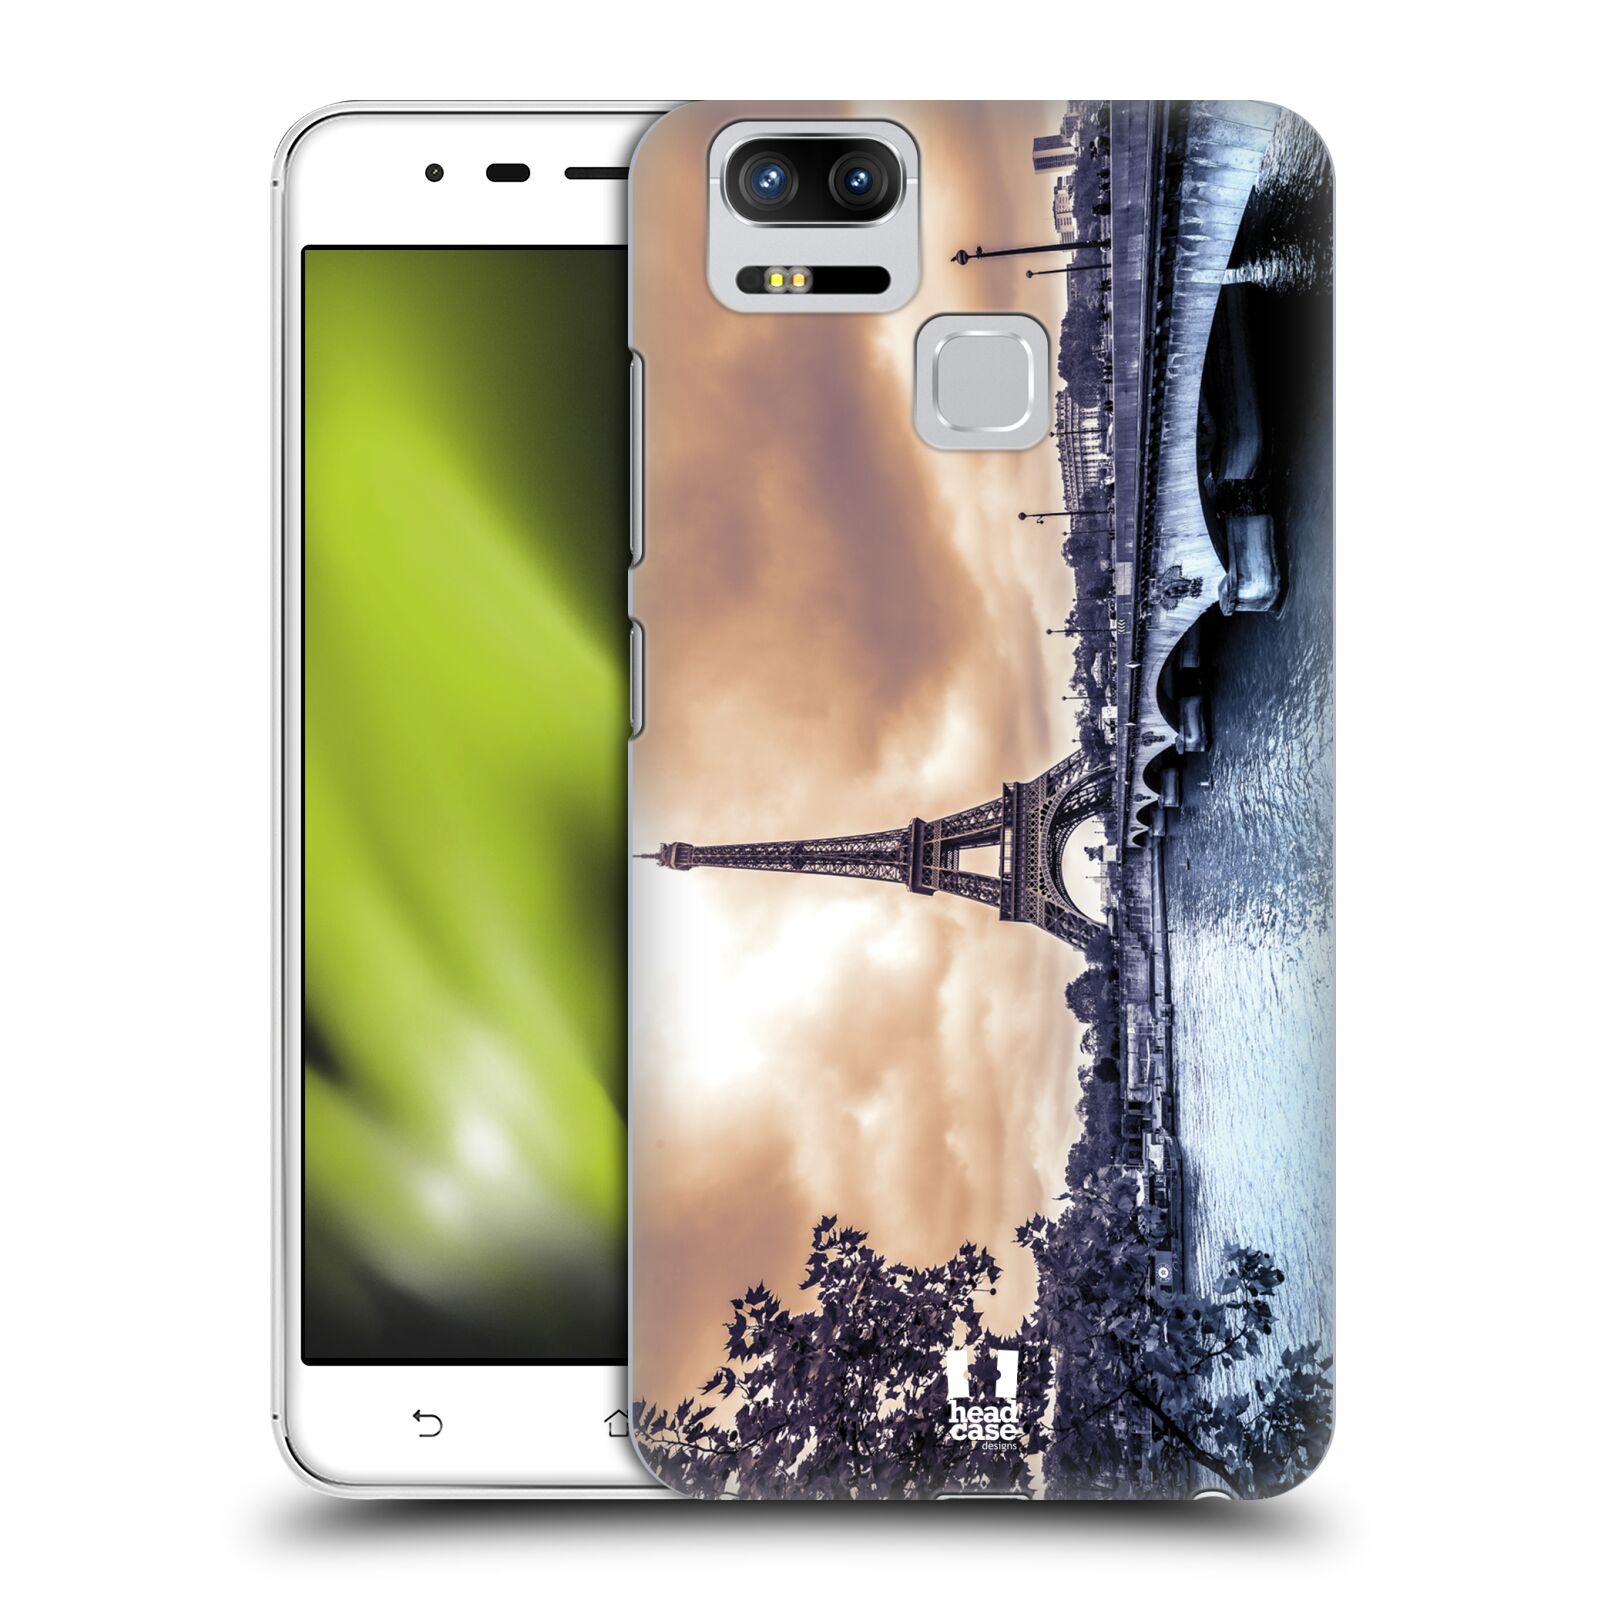 HEAD CASE plastový obal na mobil Asus Zenfone 3 Zoom ZE553KL vzor Panoramata měst horizontální foto DEŠTIVÝ DEN V PAŘÍŽI, FRANCIE